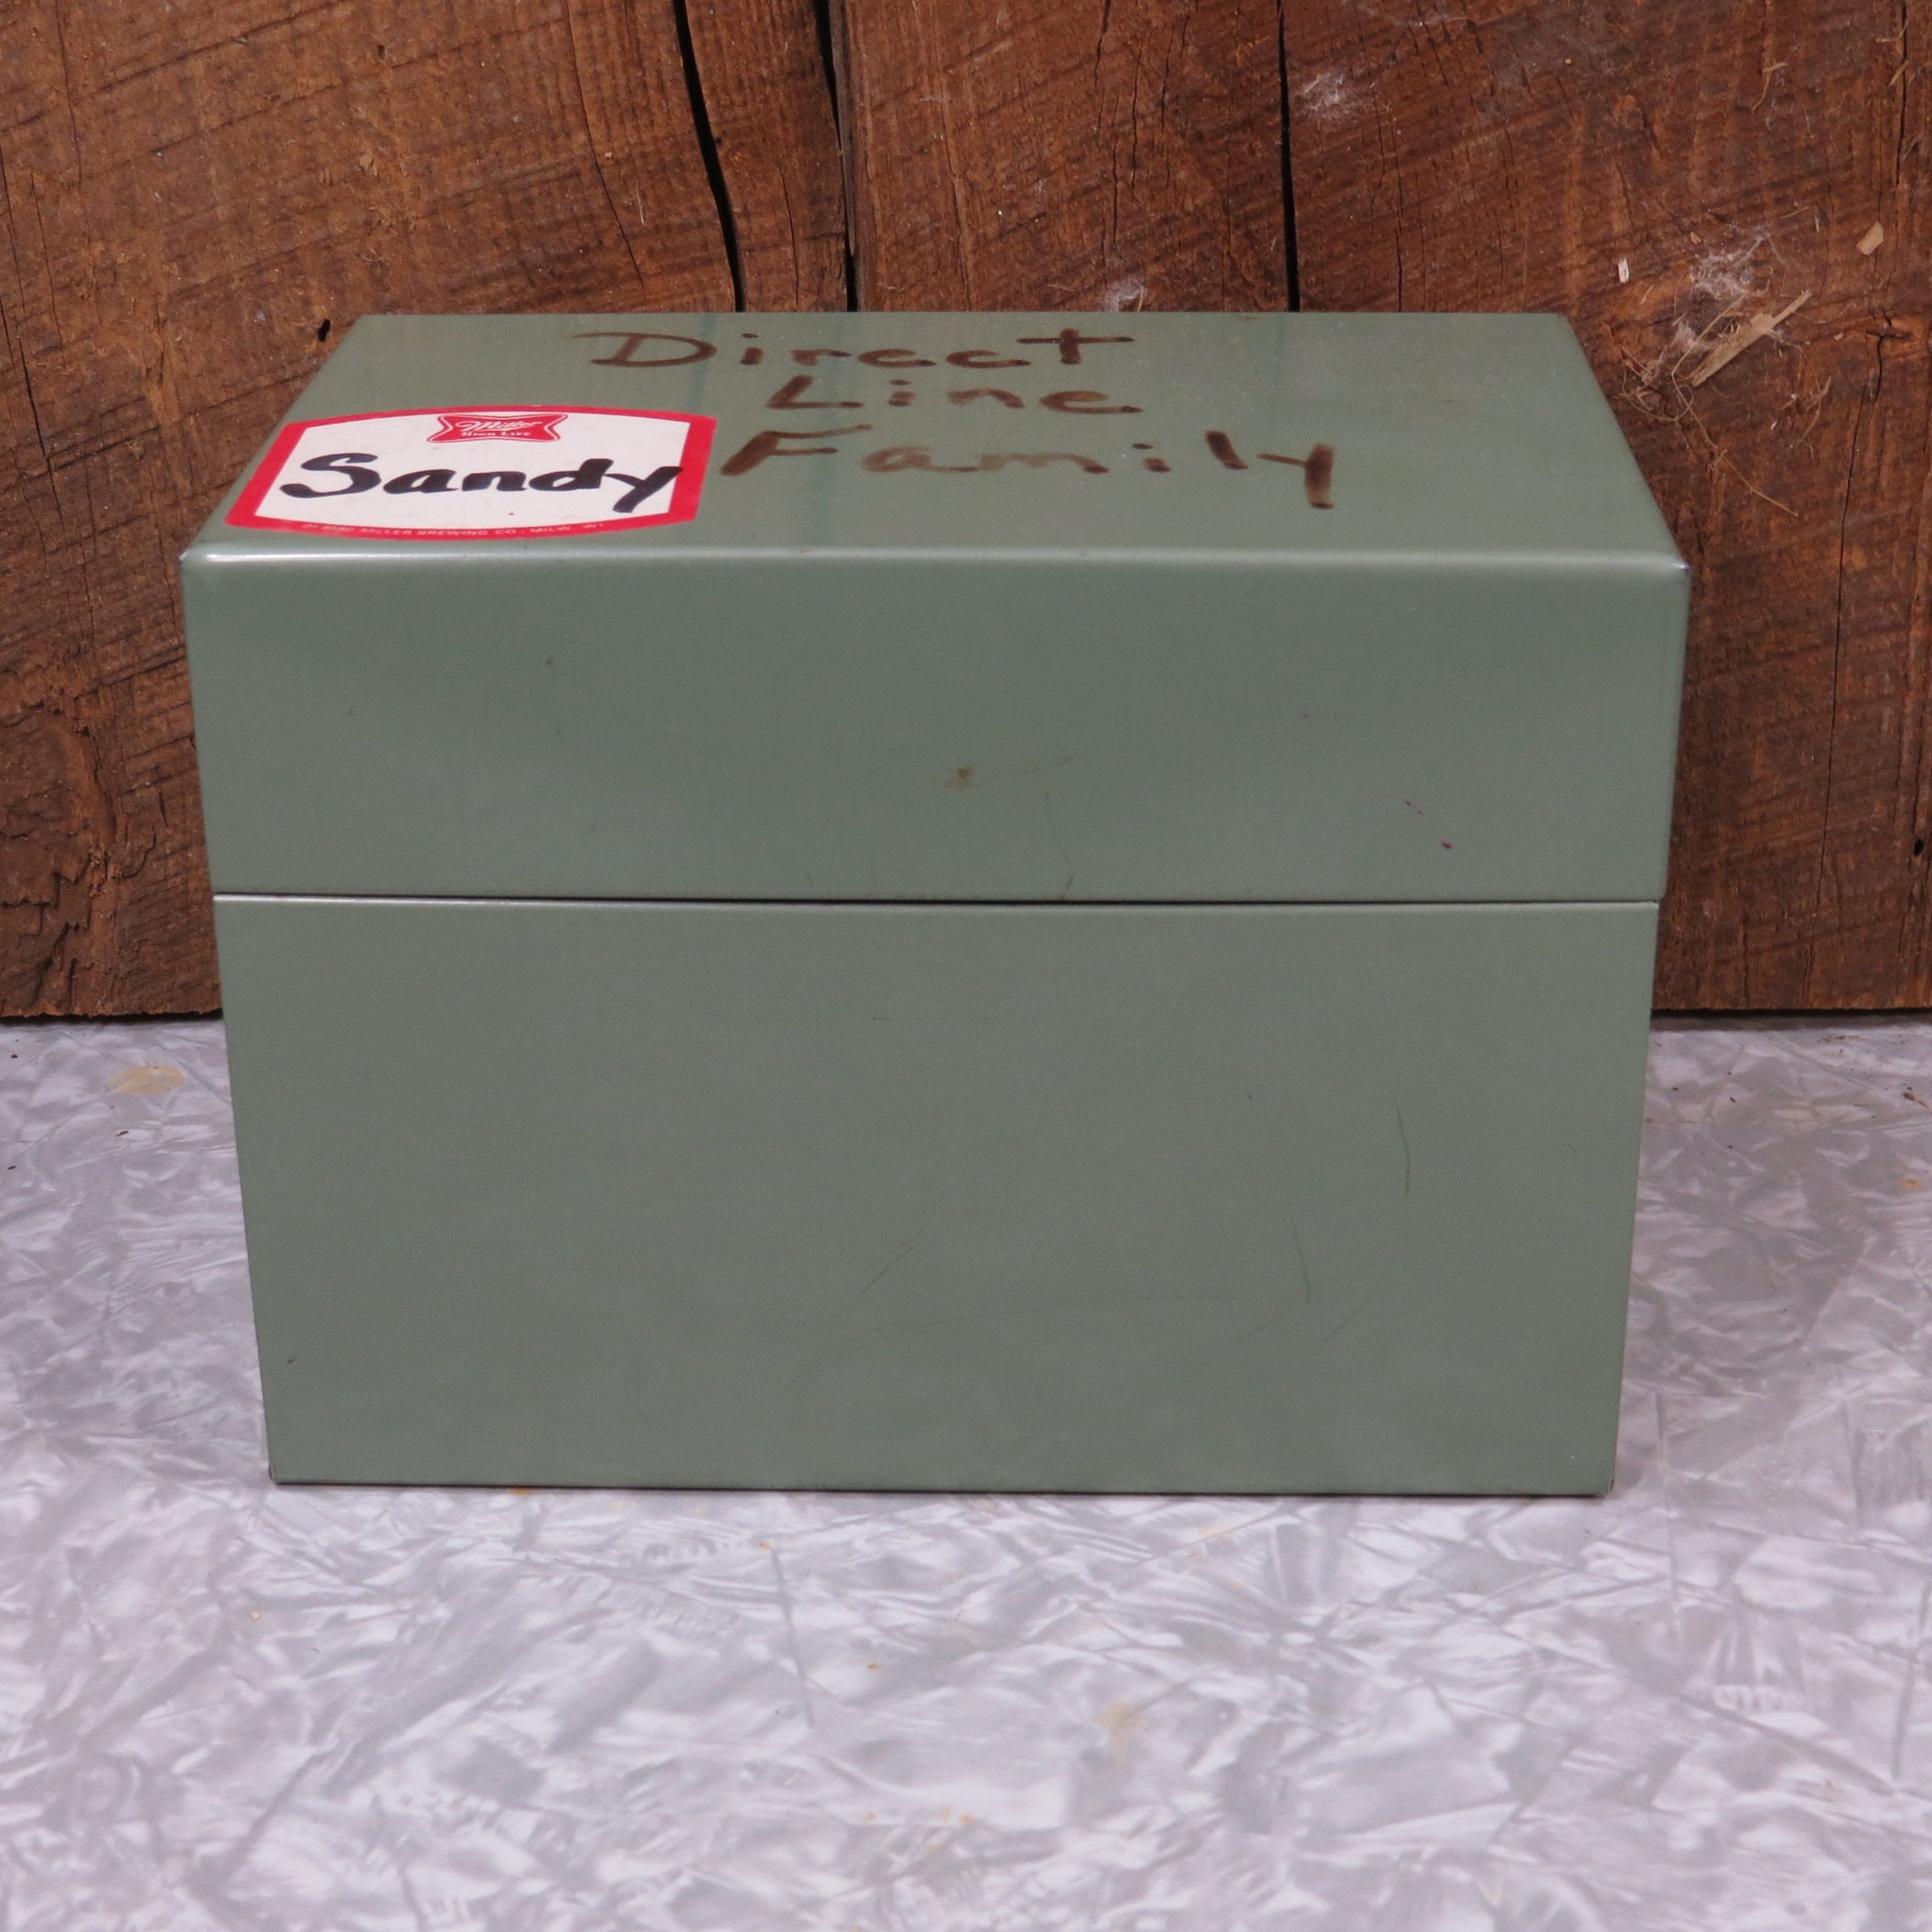 Vintage Lit-Ning Index Card File Box Metal Dark Green Color for Recipes